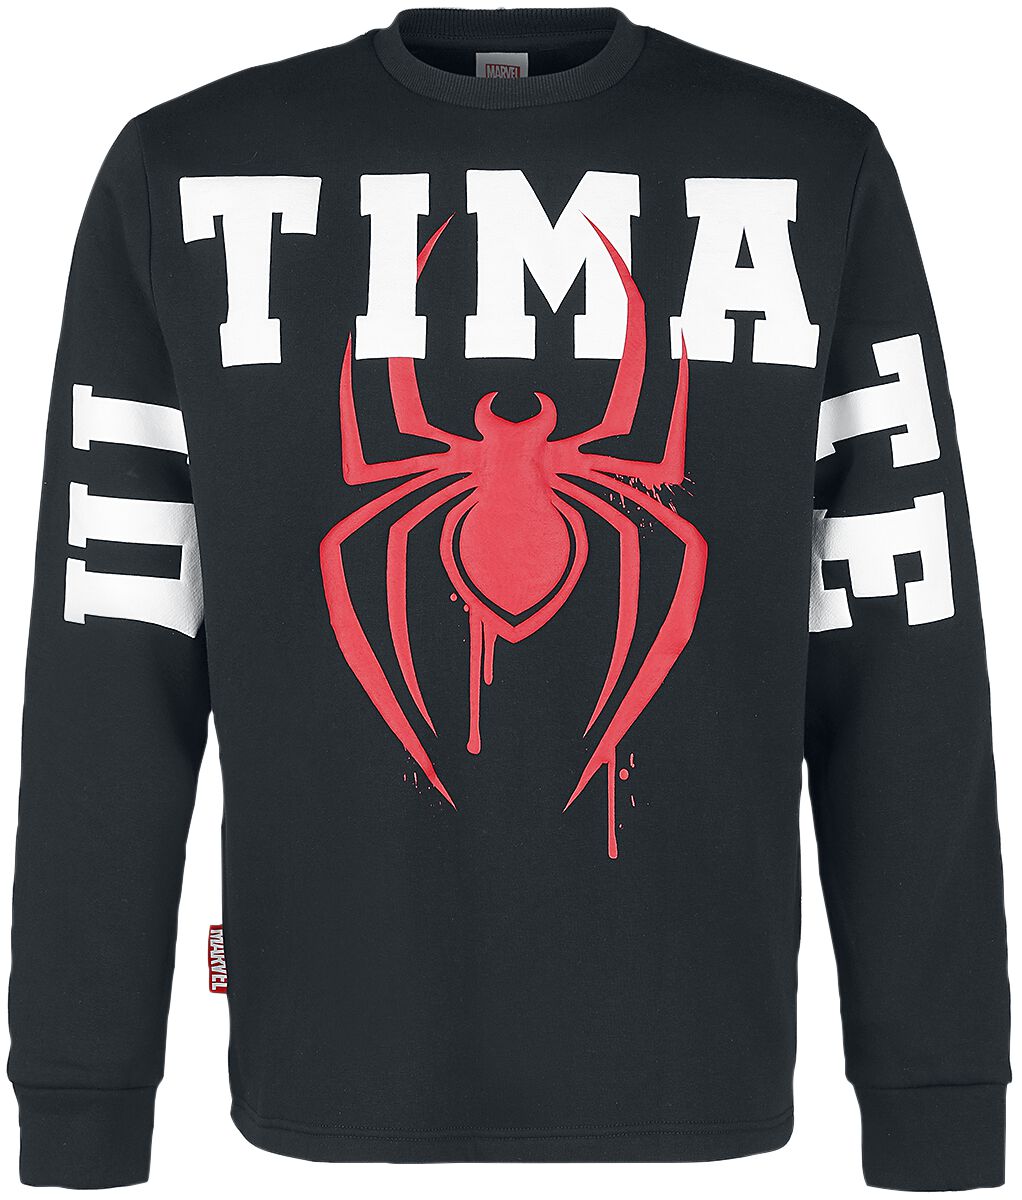 Spider-Man Ultimate Logo Sweatshirt schwarz in XXL